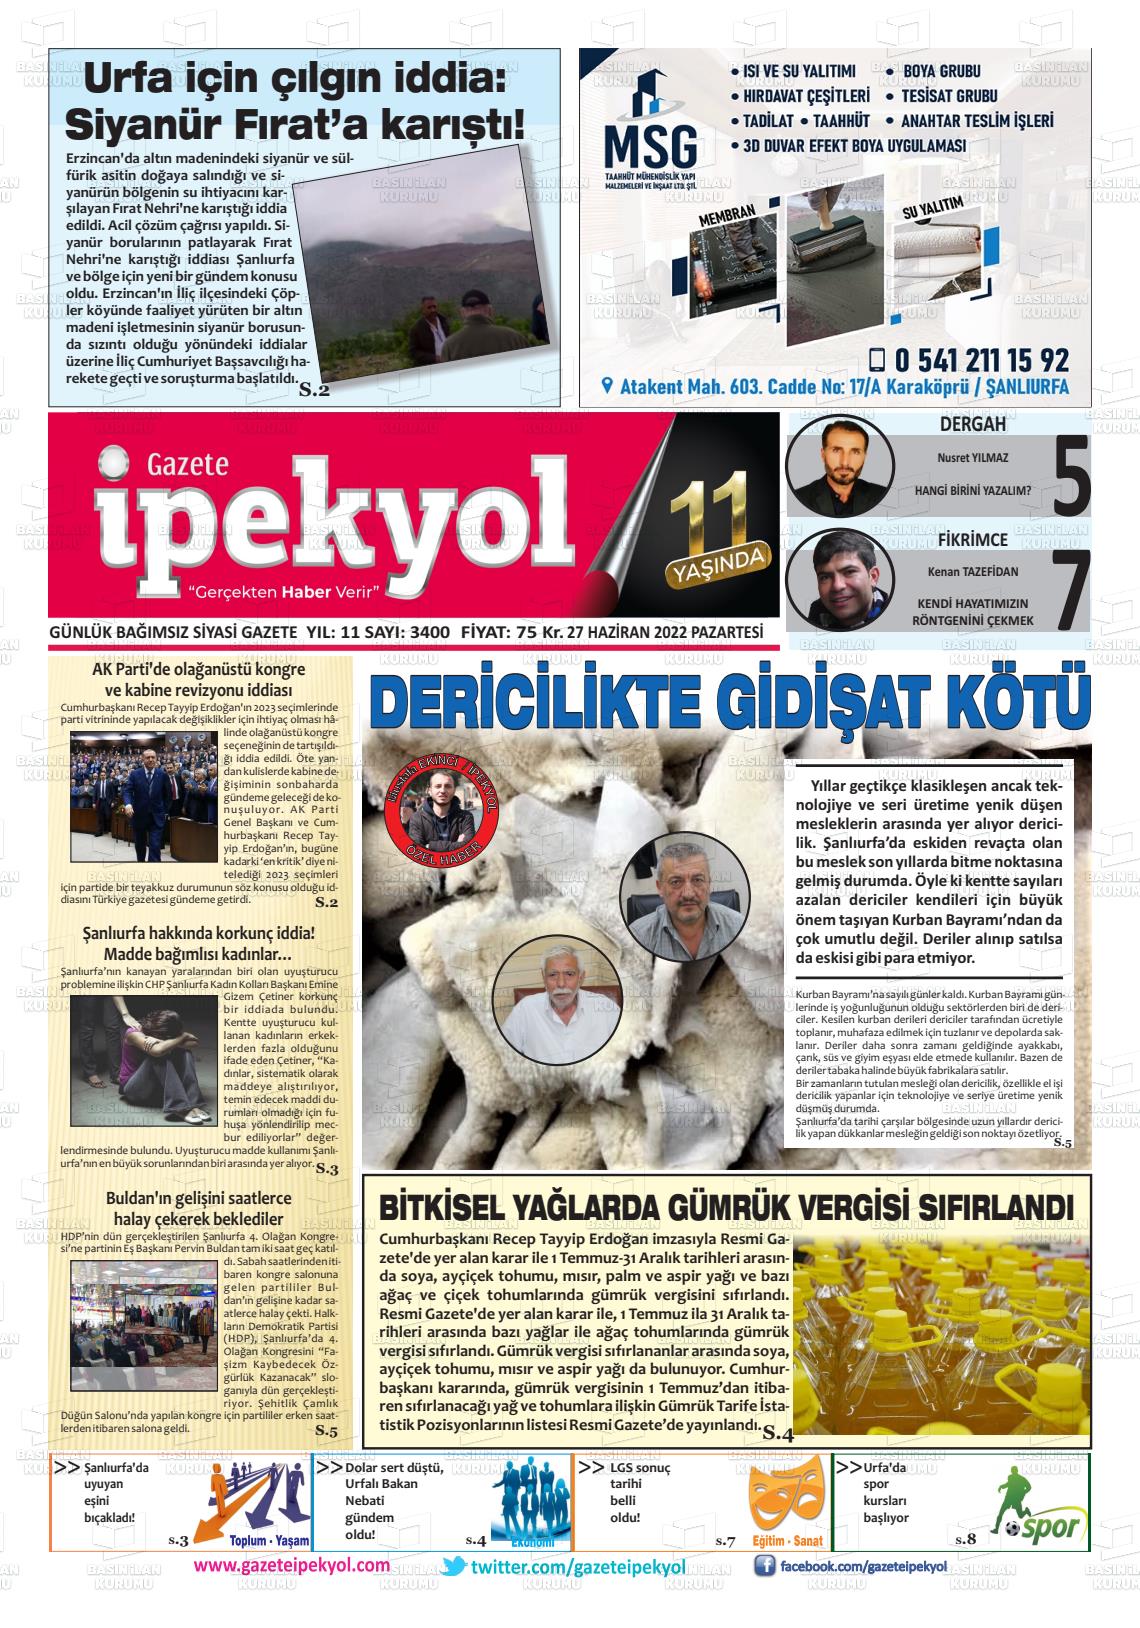 27 Haziran 2022 Gazete İpekyol Gazete Manşeti